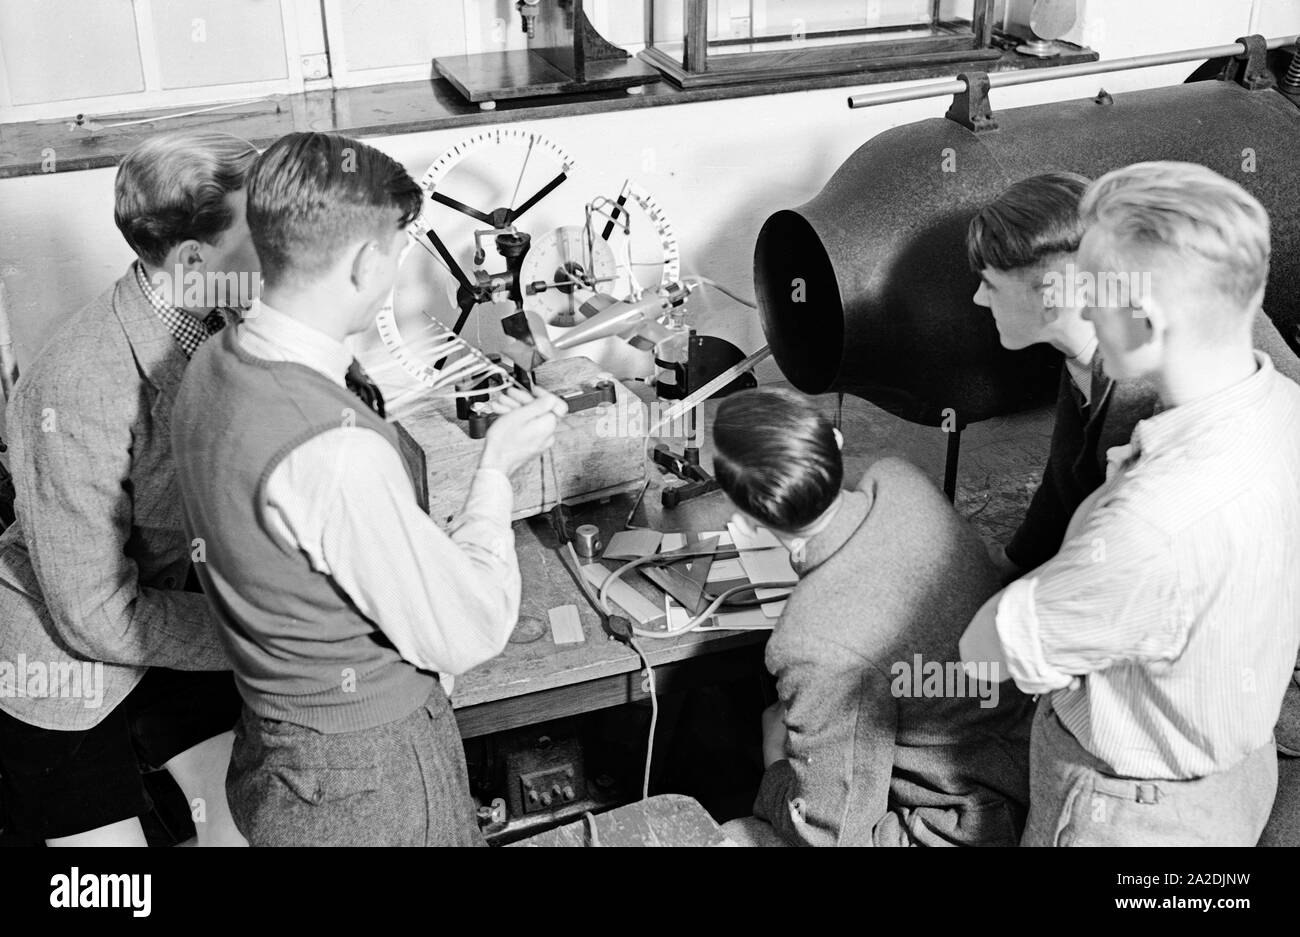 Flugschüler schauen sich anhand eines Modells die Steuerung eines Flugzeuges an, Deutschland 1930er Jahre. Pilot trainees studying the steering of a plane by observing a model, Germany 1930s. Stock Photo